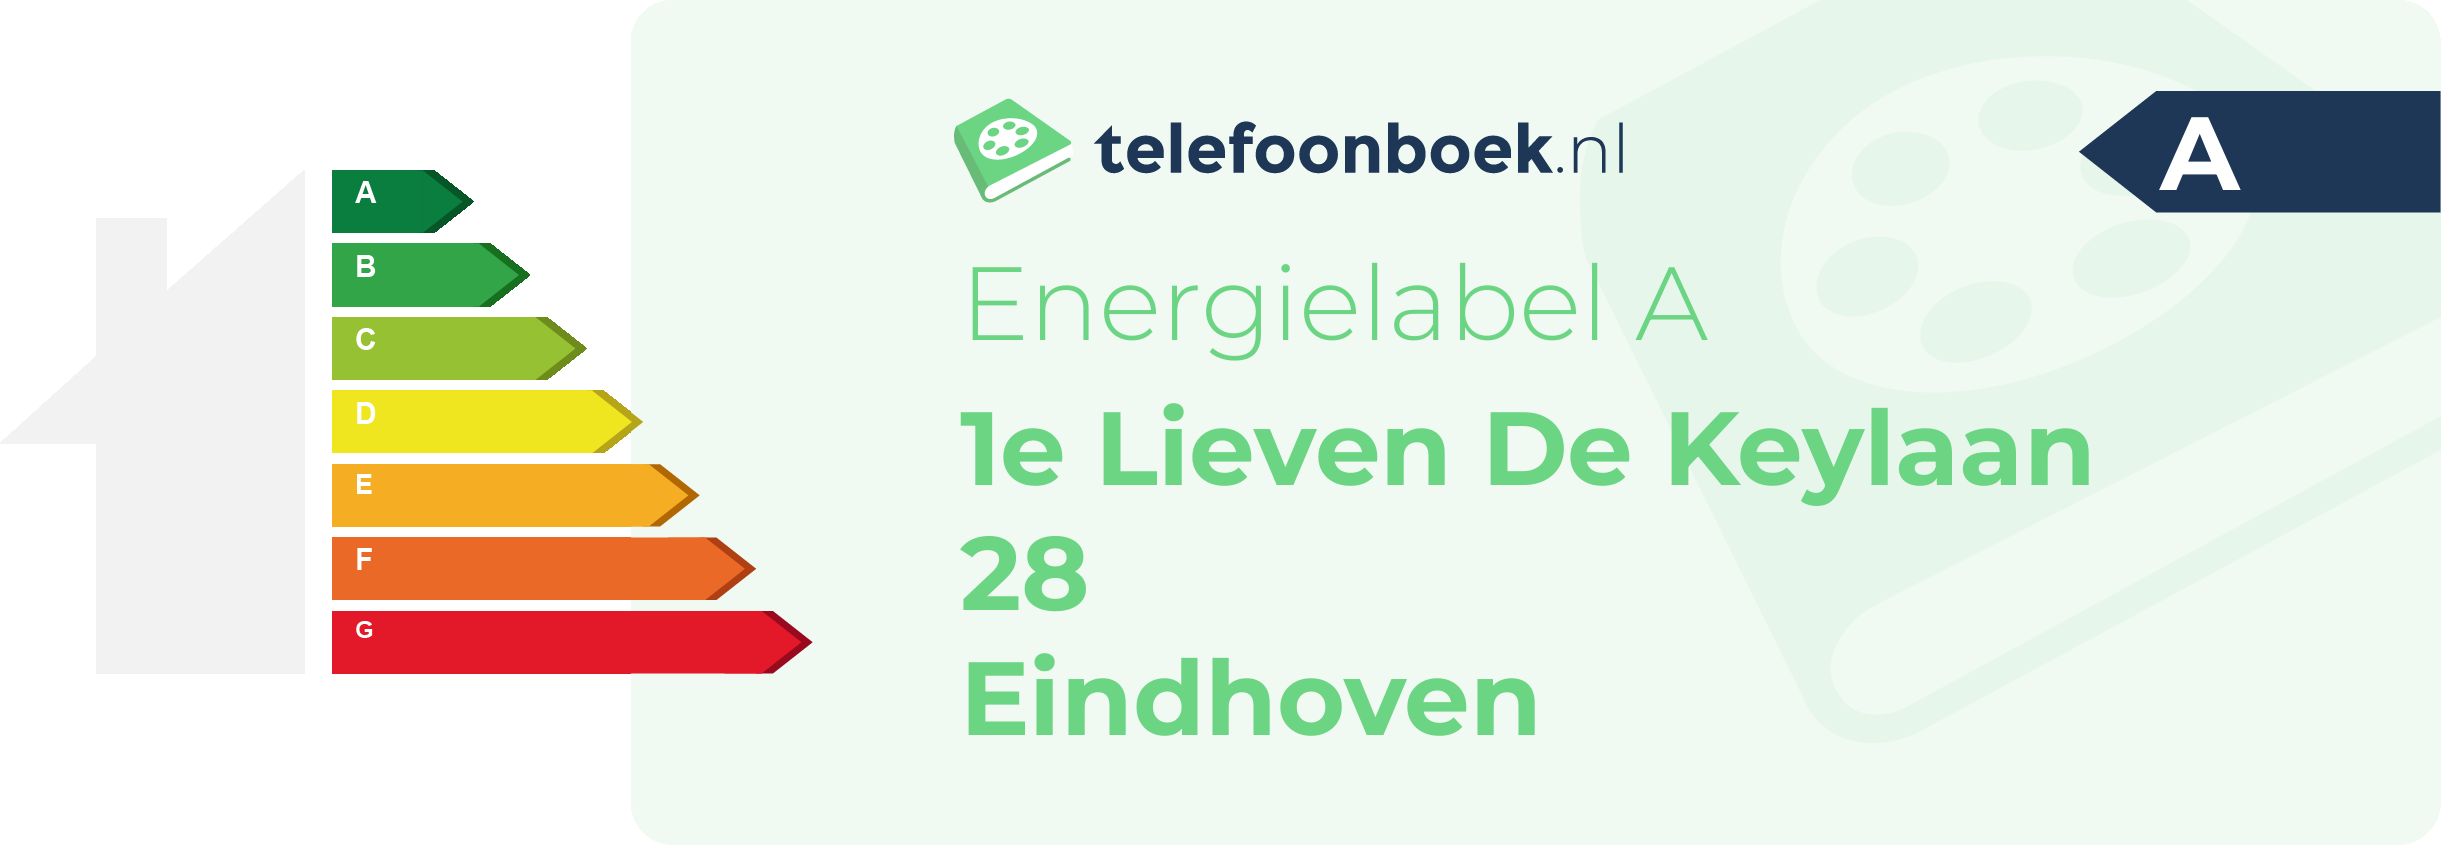 Energielabel 1e Lieven De Keylaan 28 Eindhoven